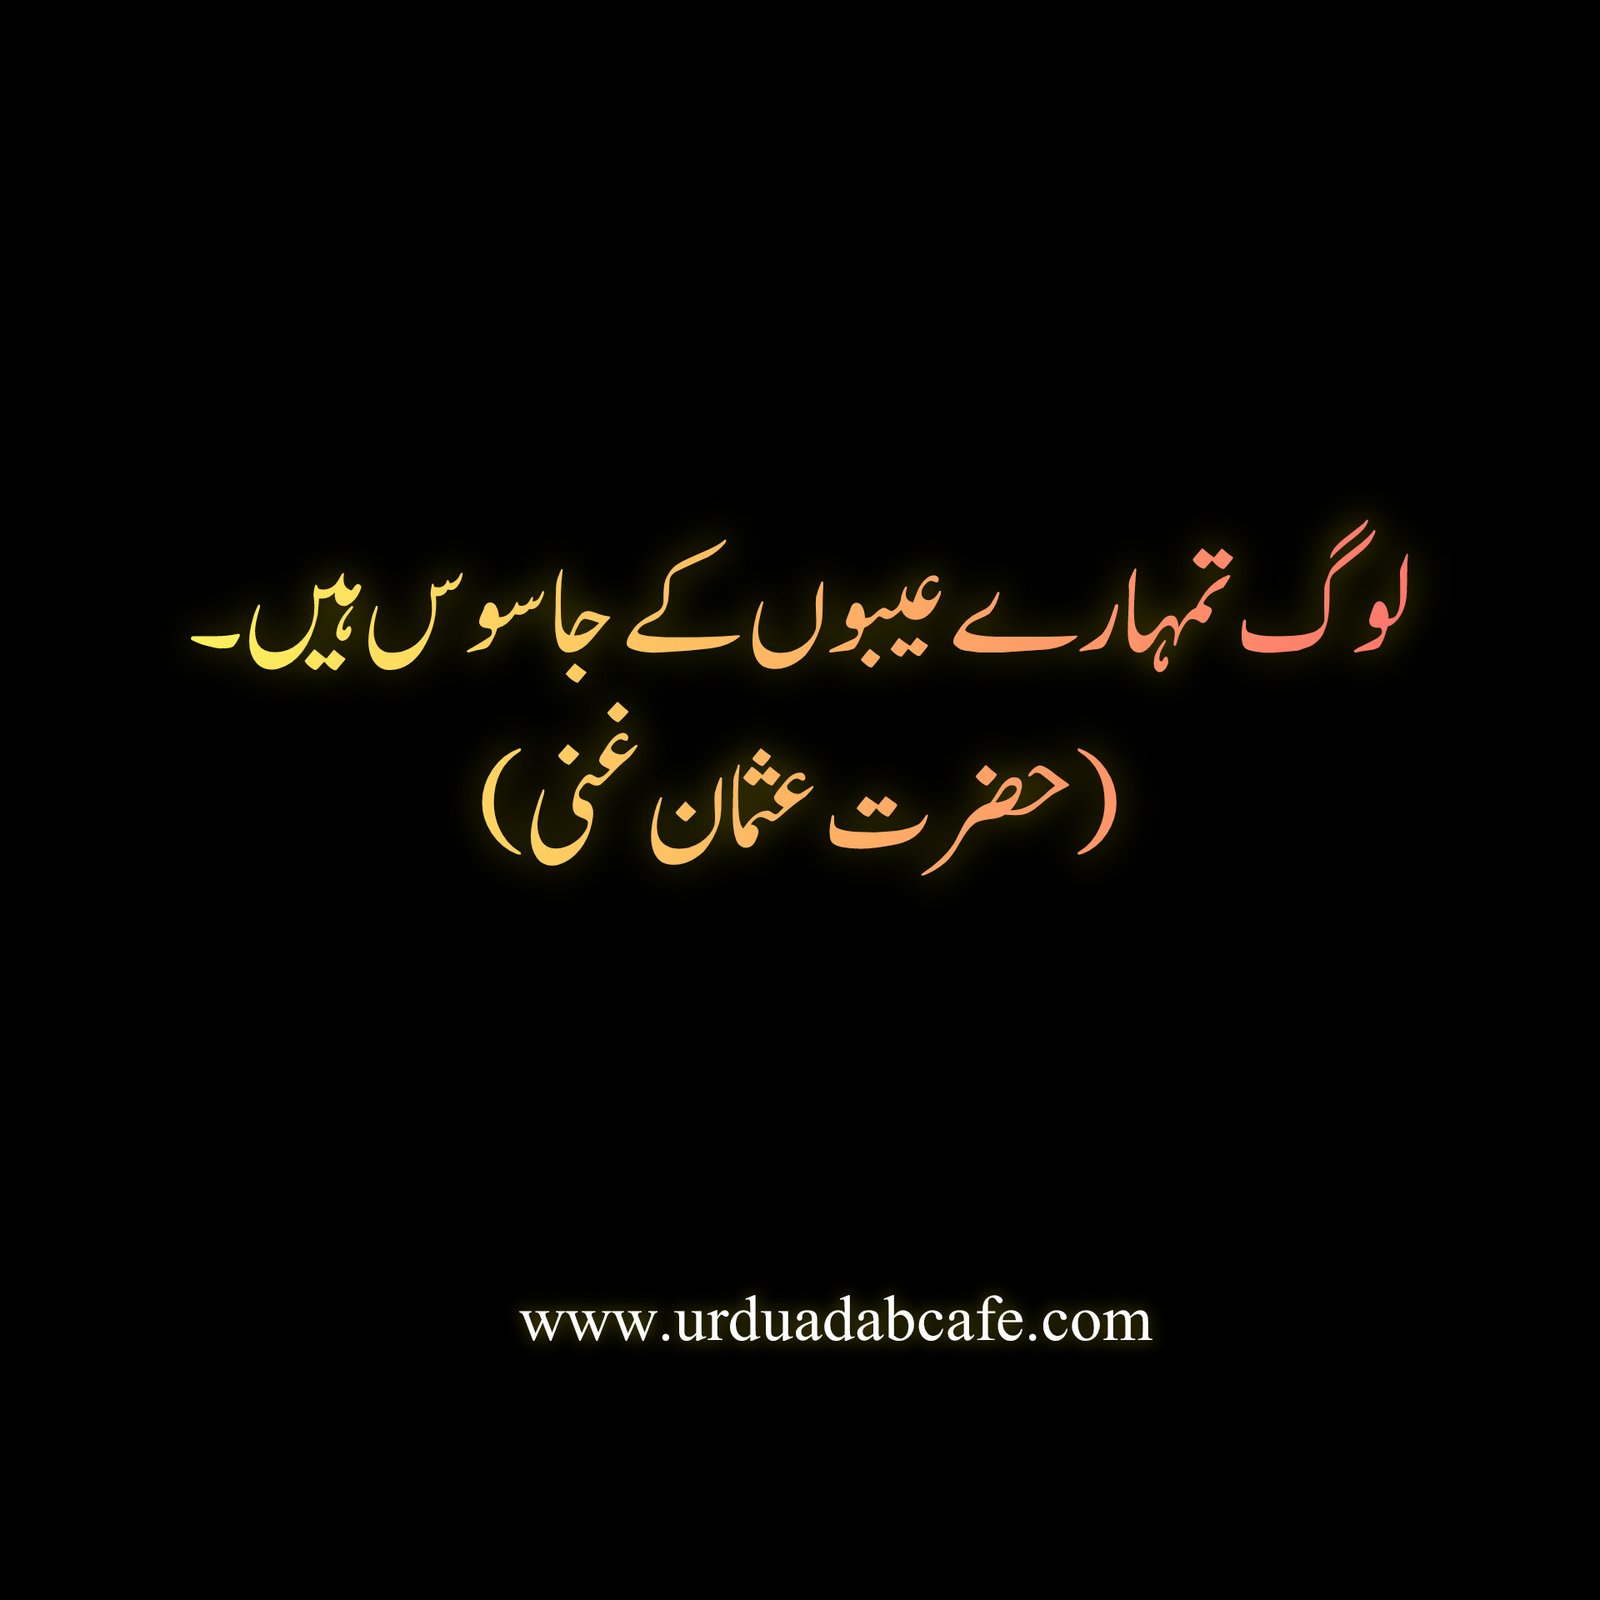 Urdu quotes Islamic